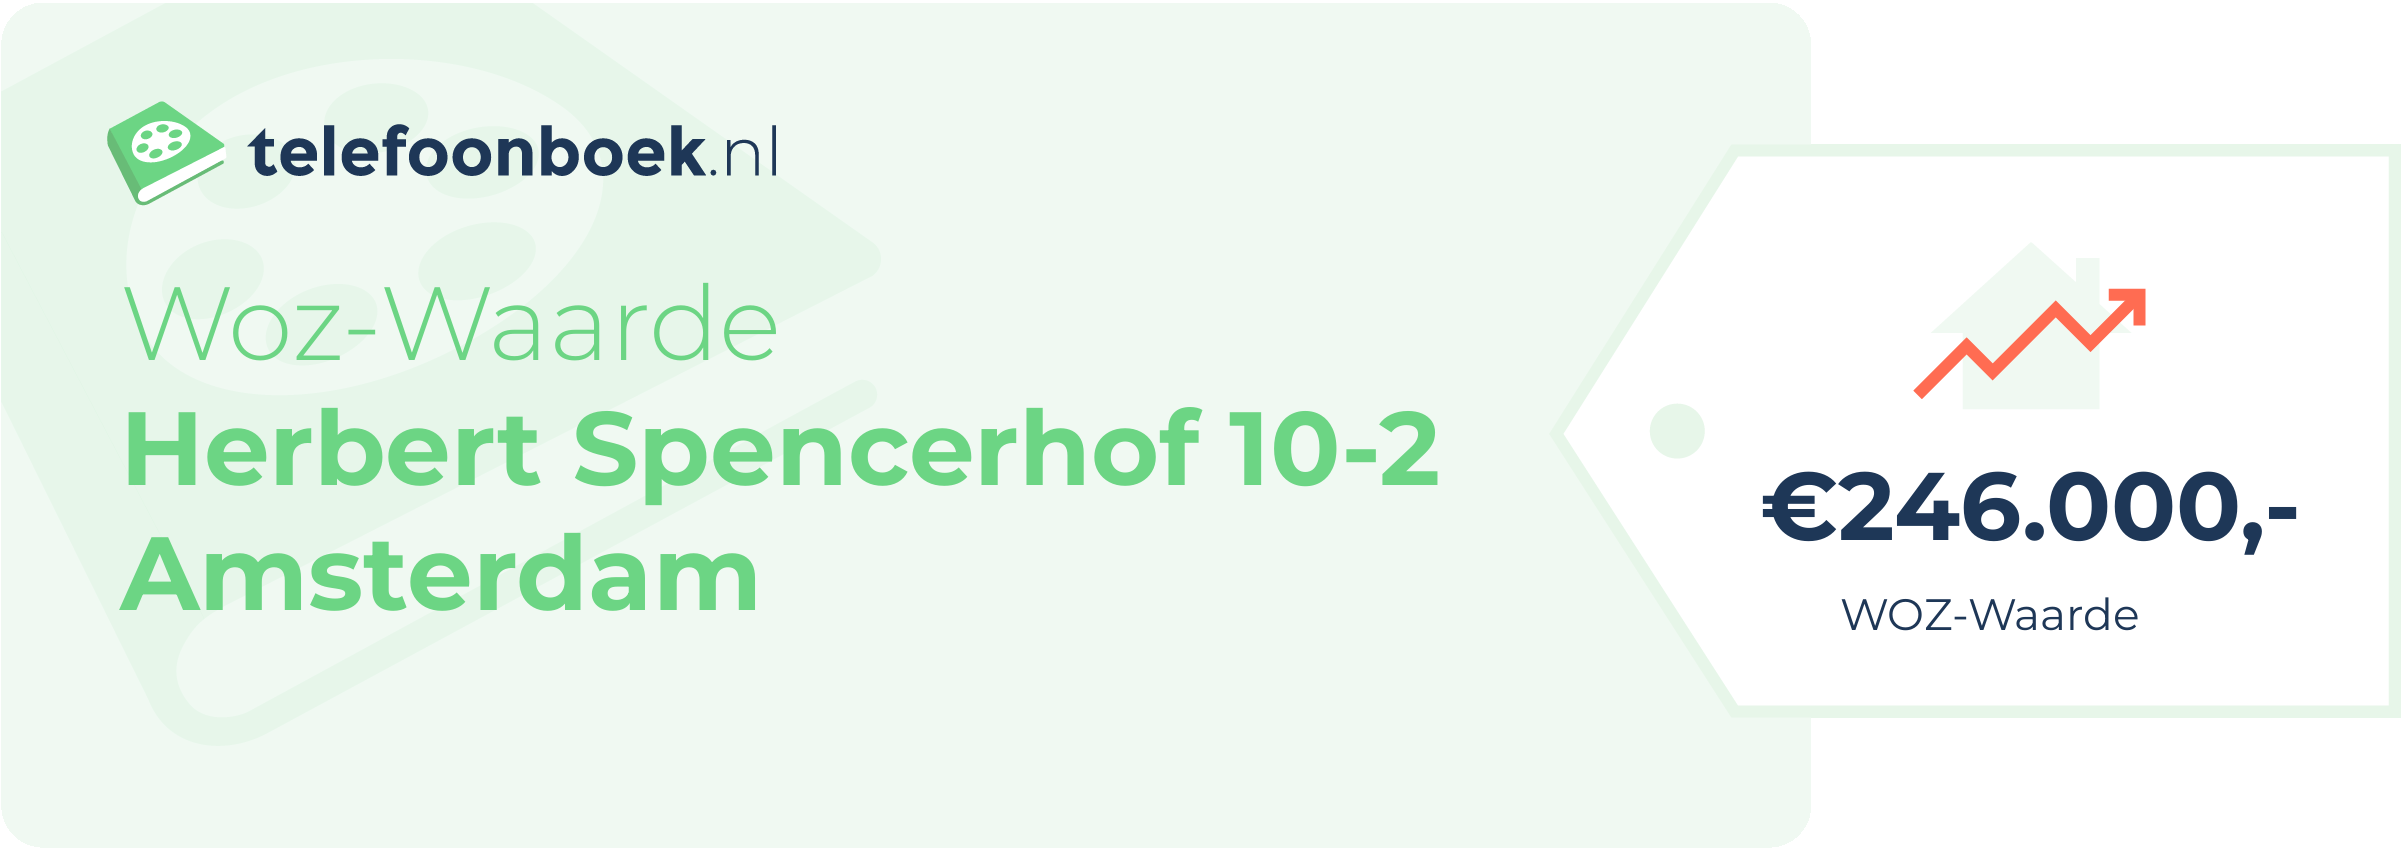 WOZ-waarde Herbert Spencerhof 10-2 Amsterdam